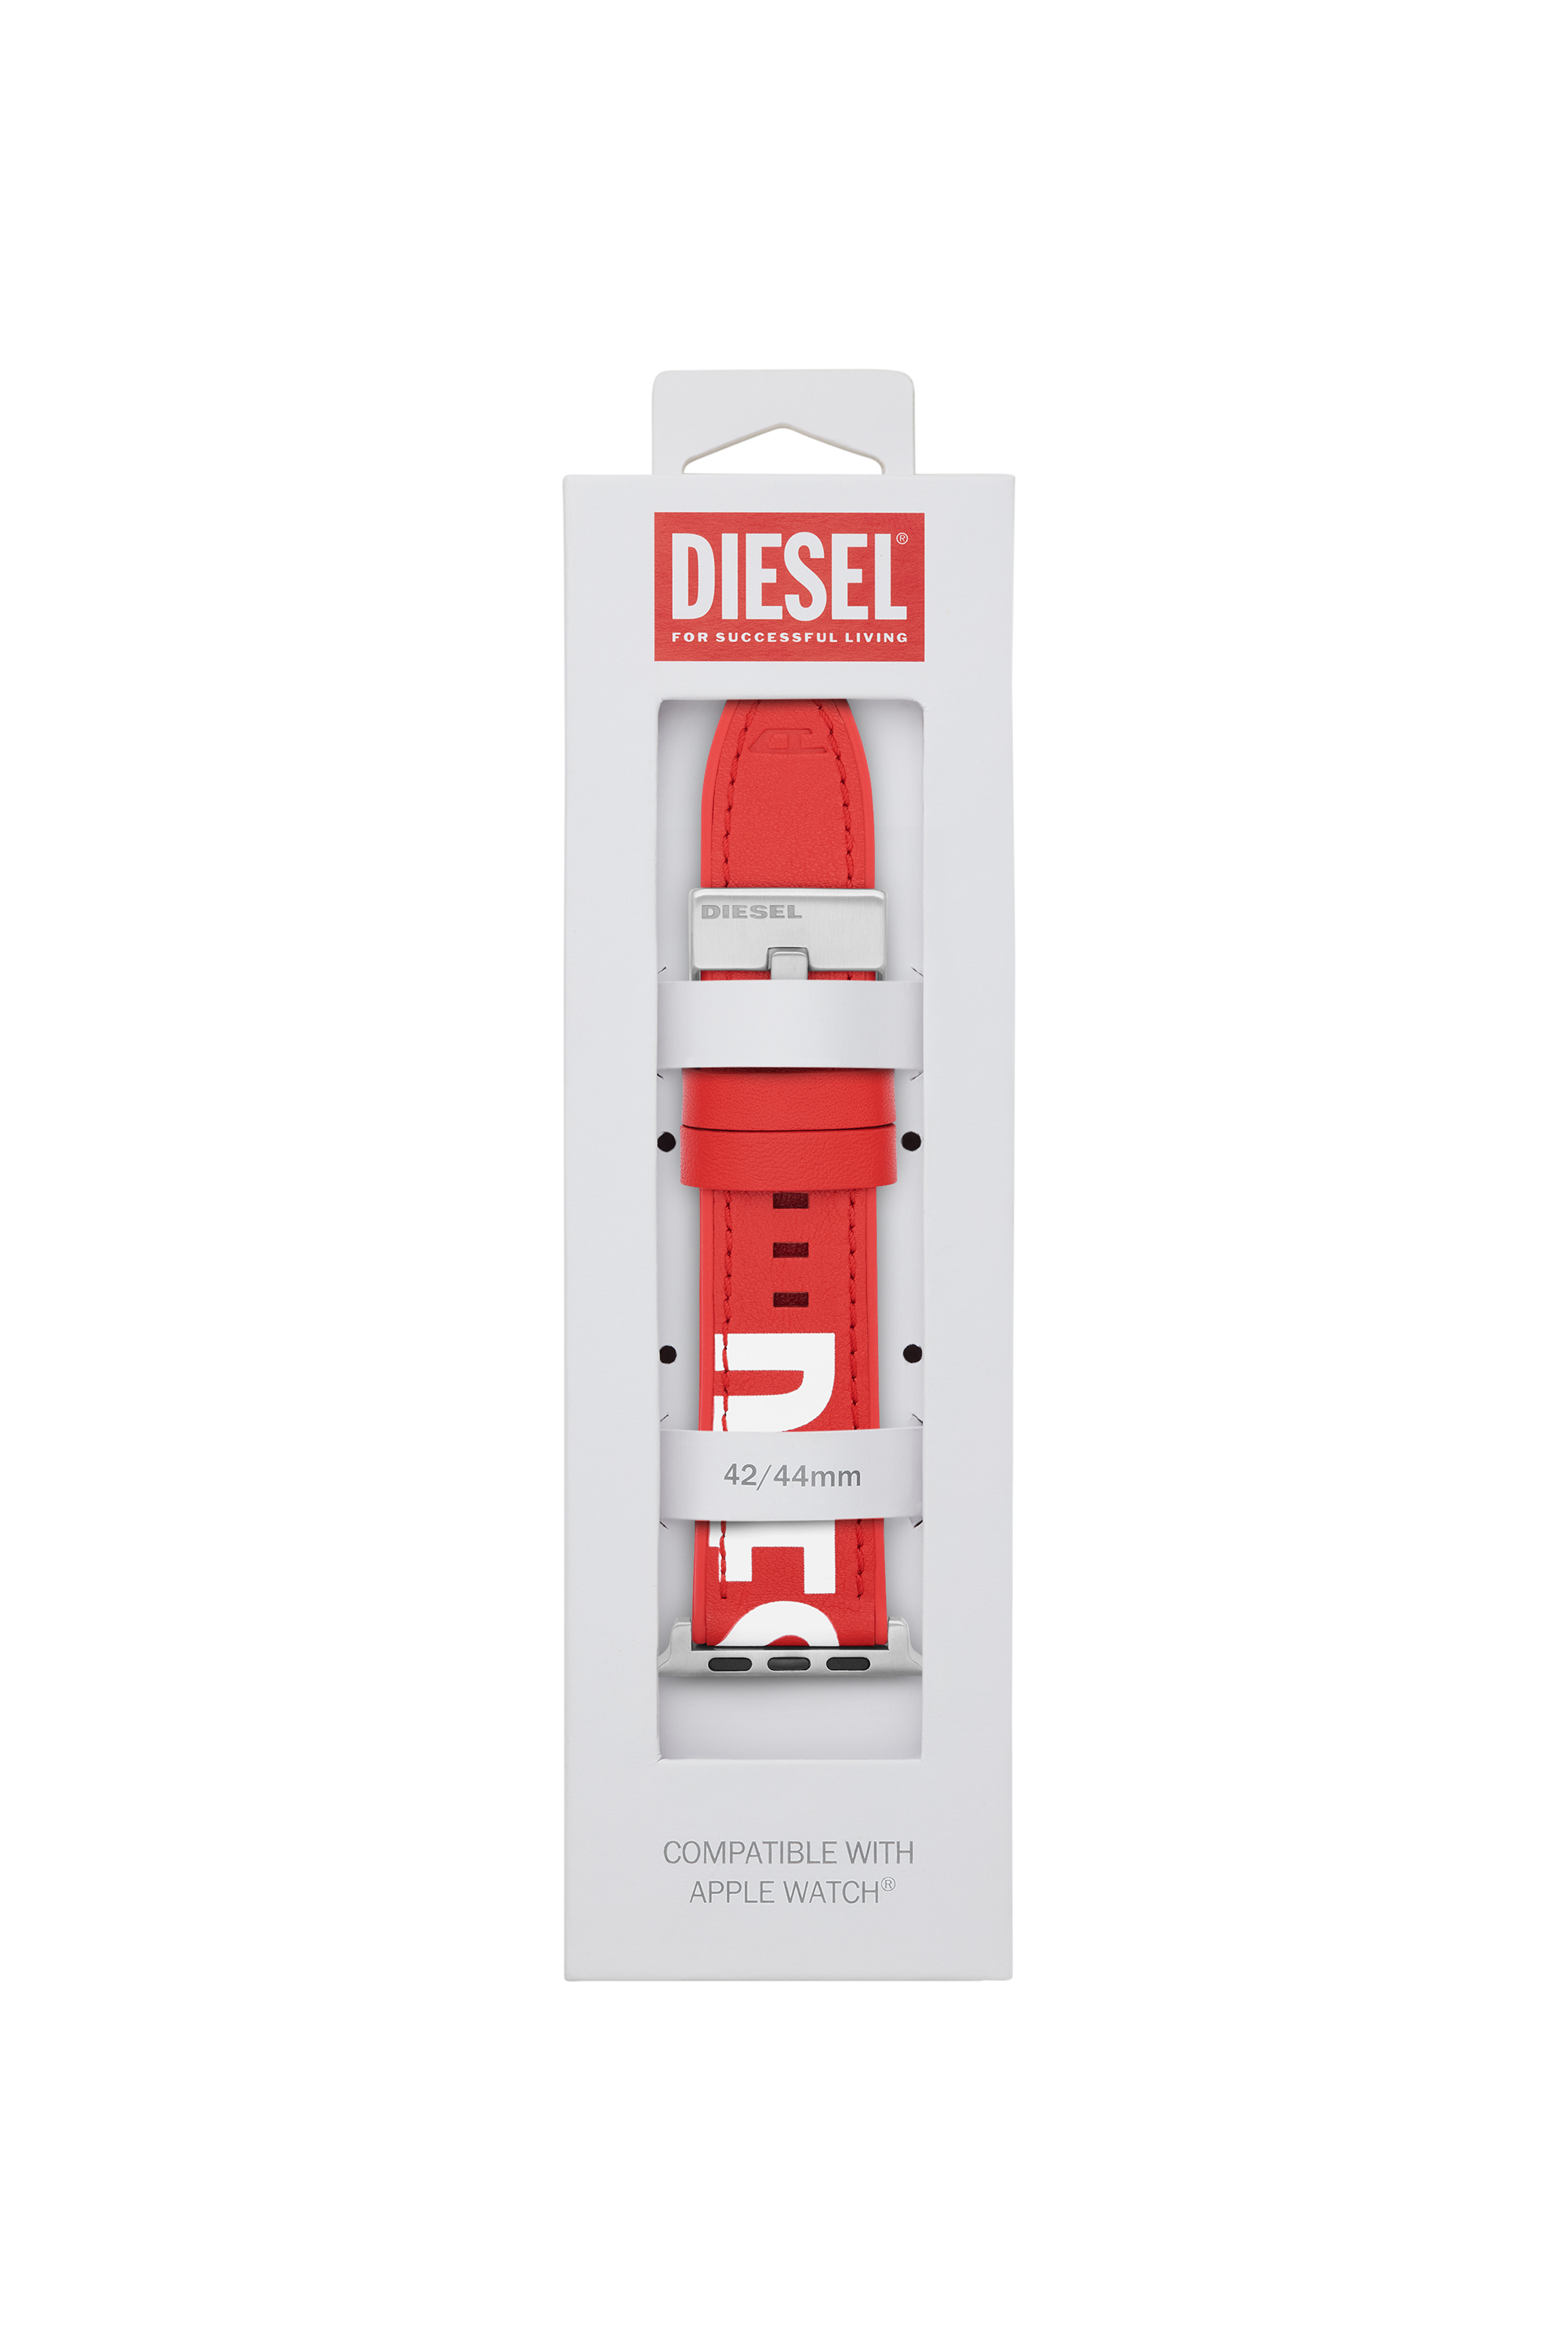 Diesel - DSS003, Rouge - Image 2